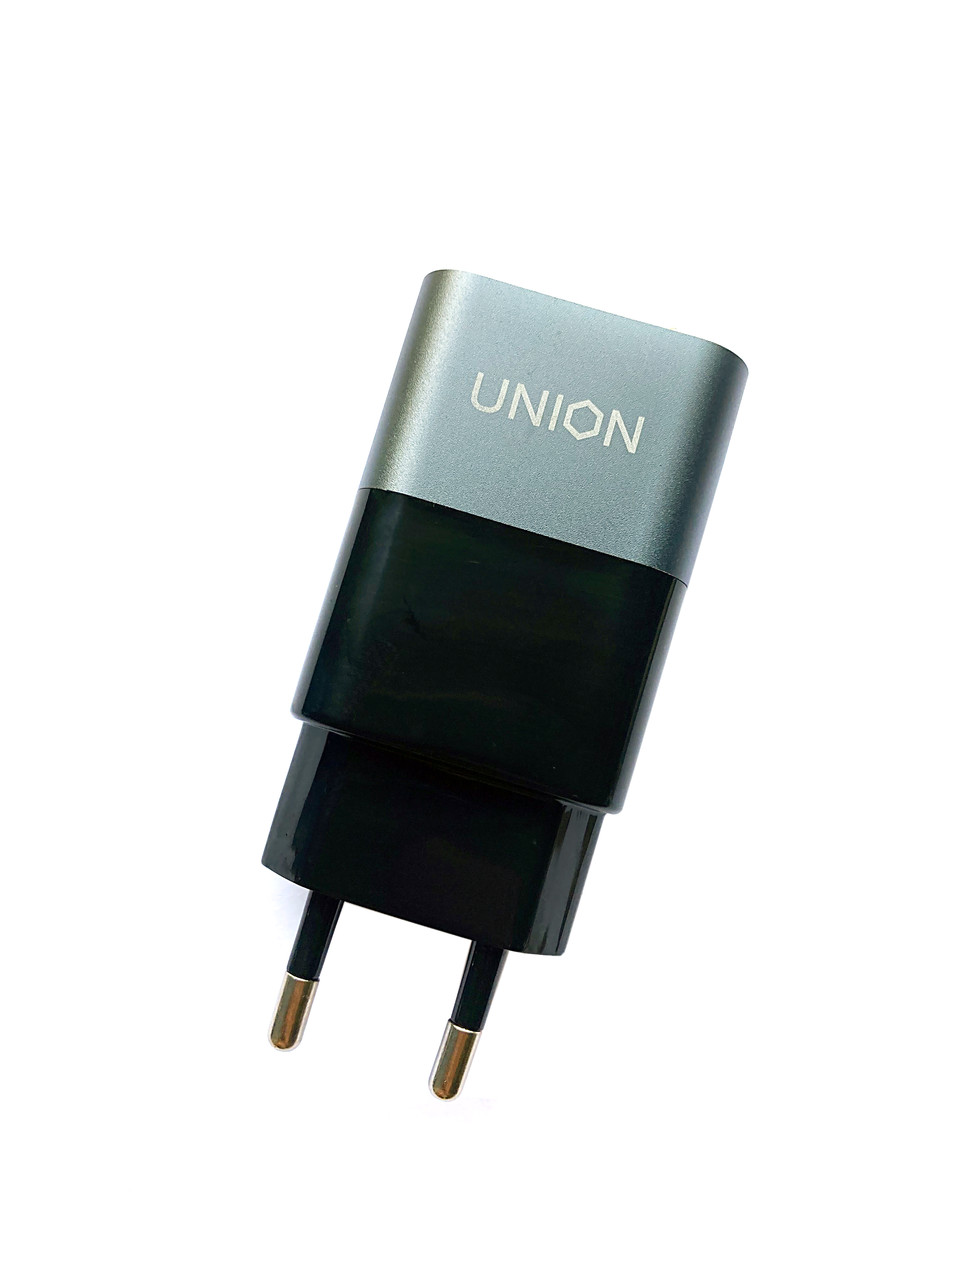 Зарядное устройство (USB-адаптер) Union, QQC 3.0, 1x USB, индикатор